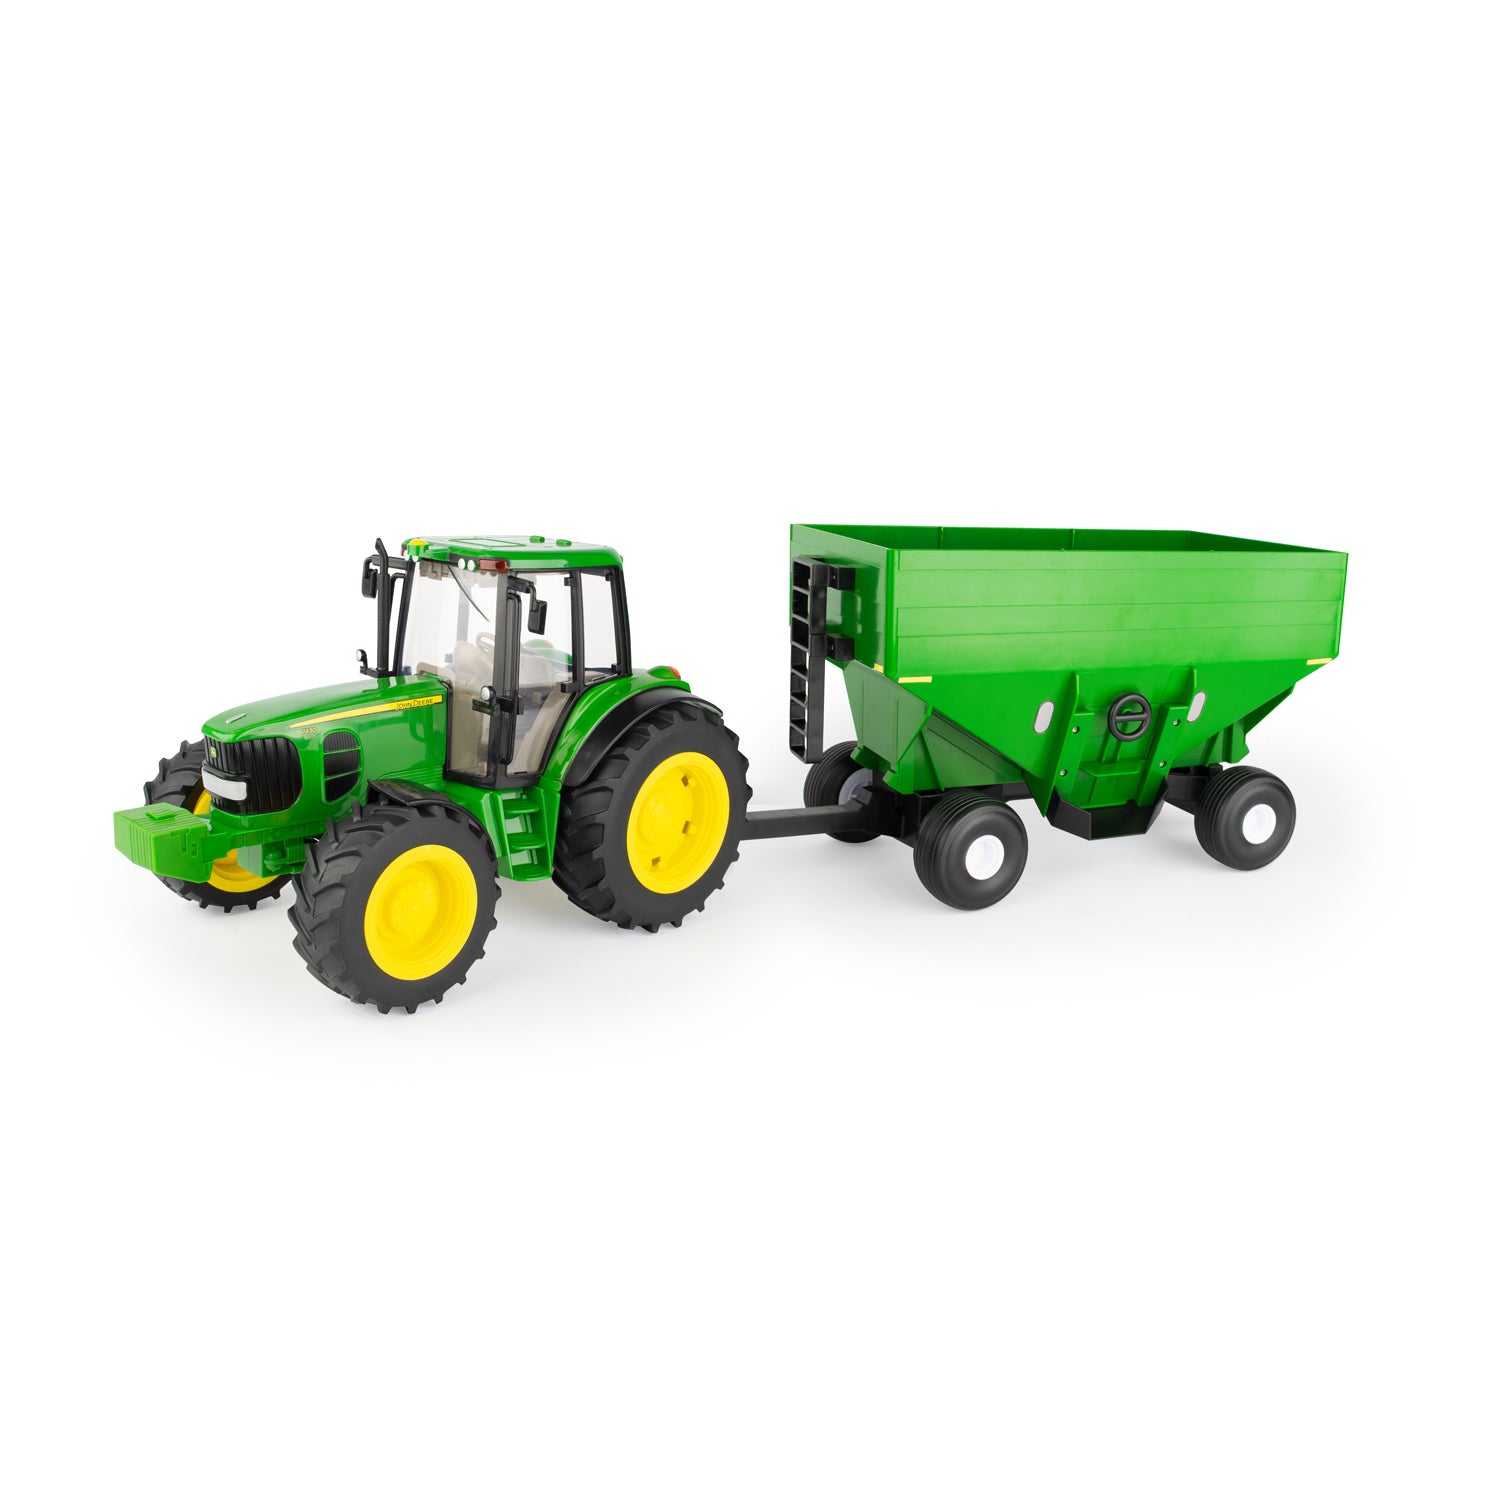 Tomy Ertl John Deere 7430 Toy Tractor